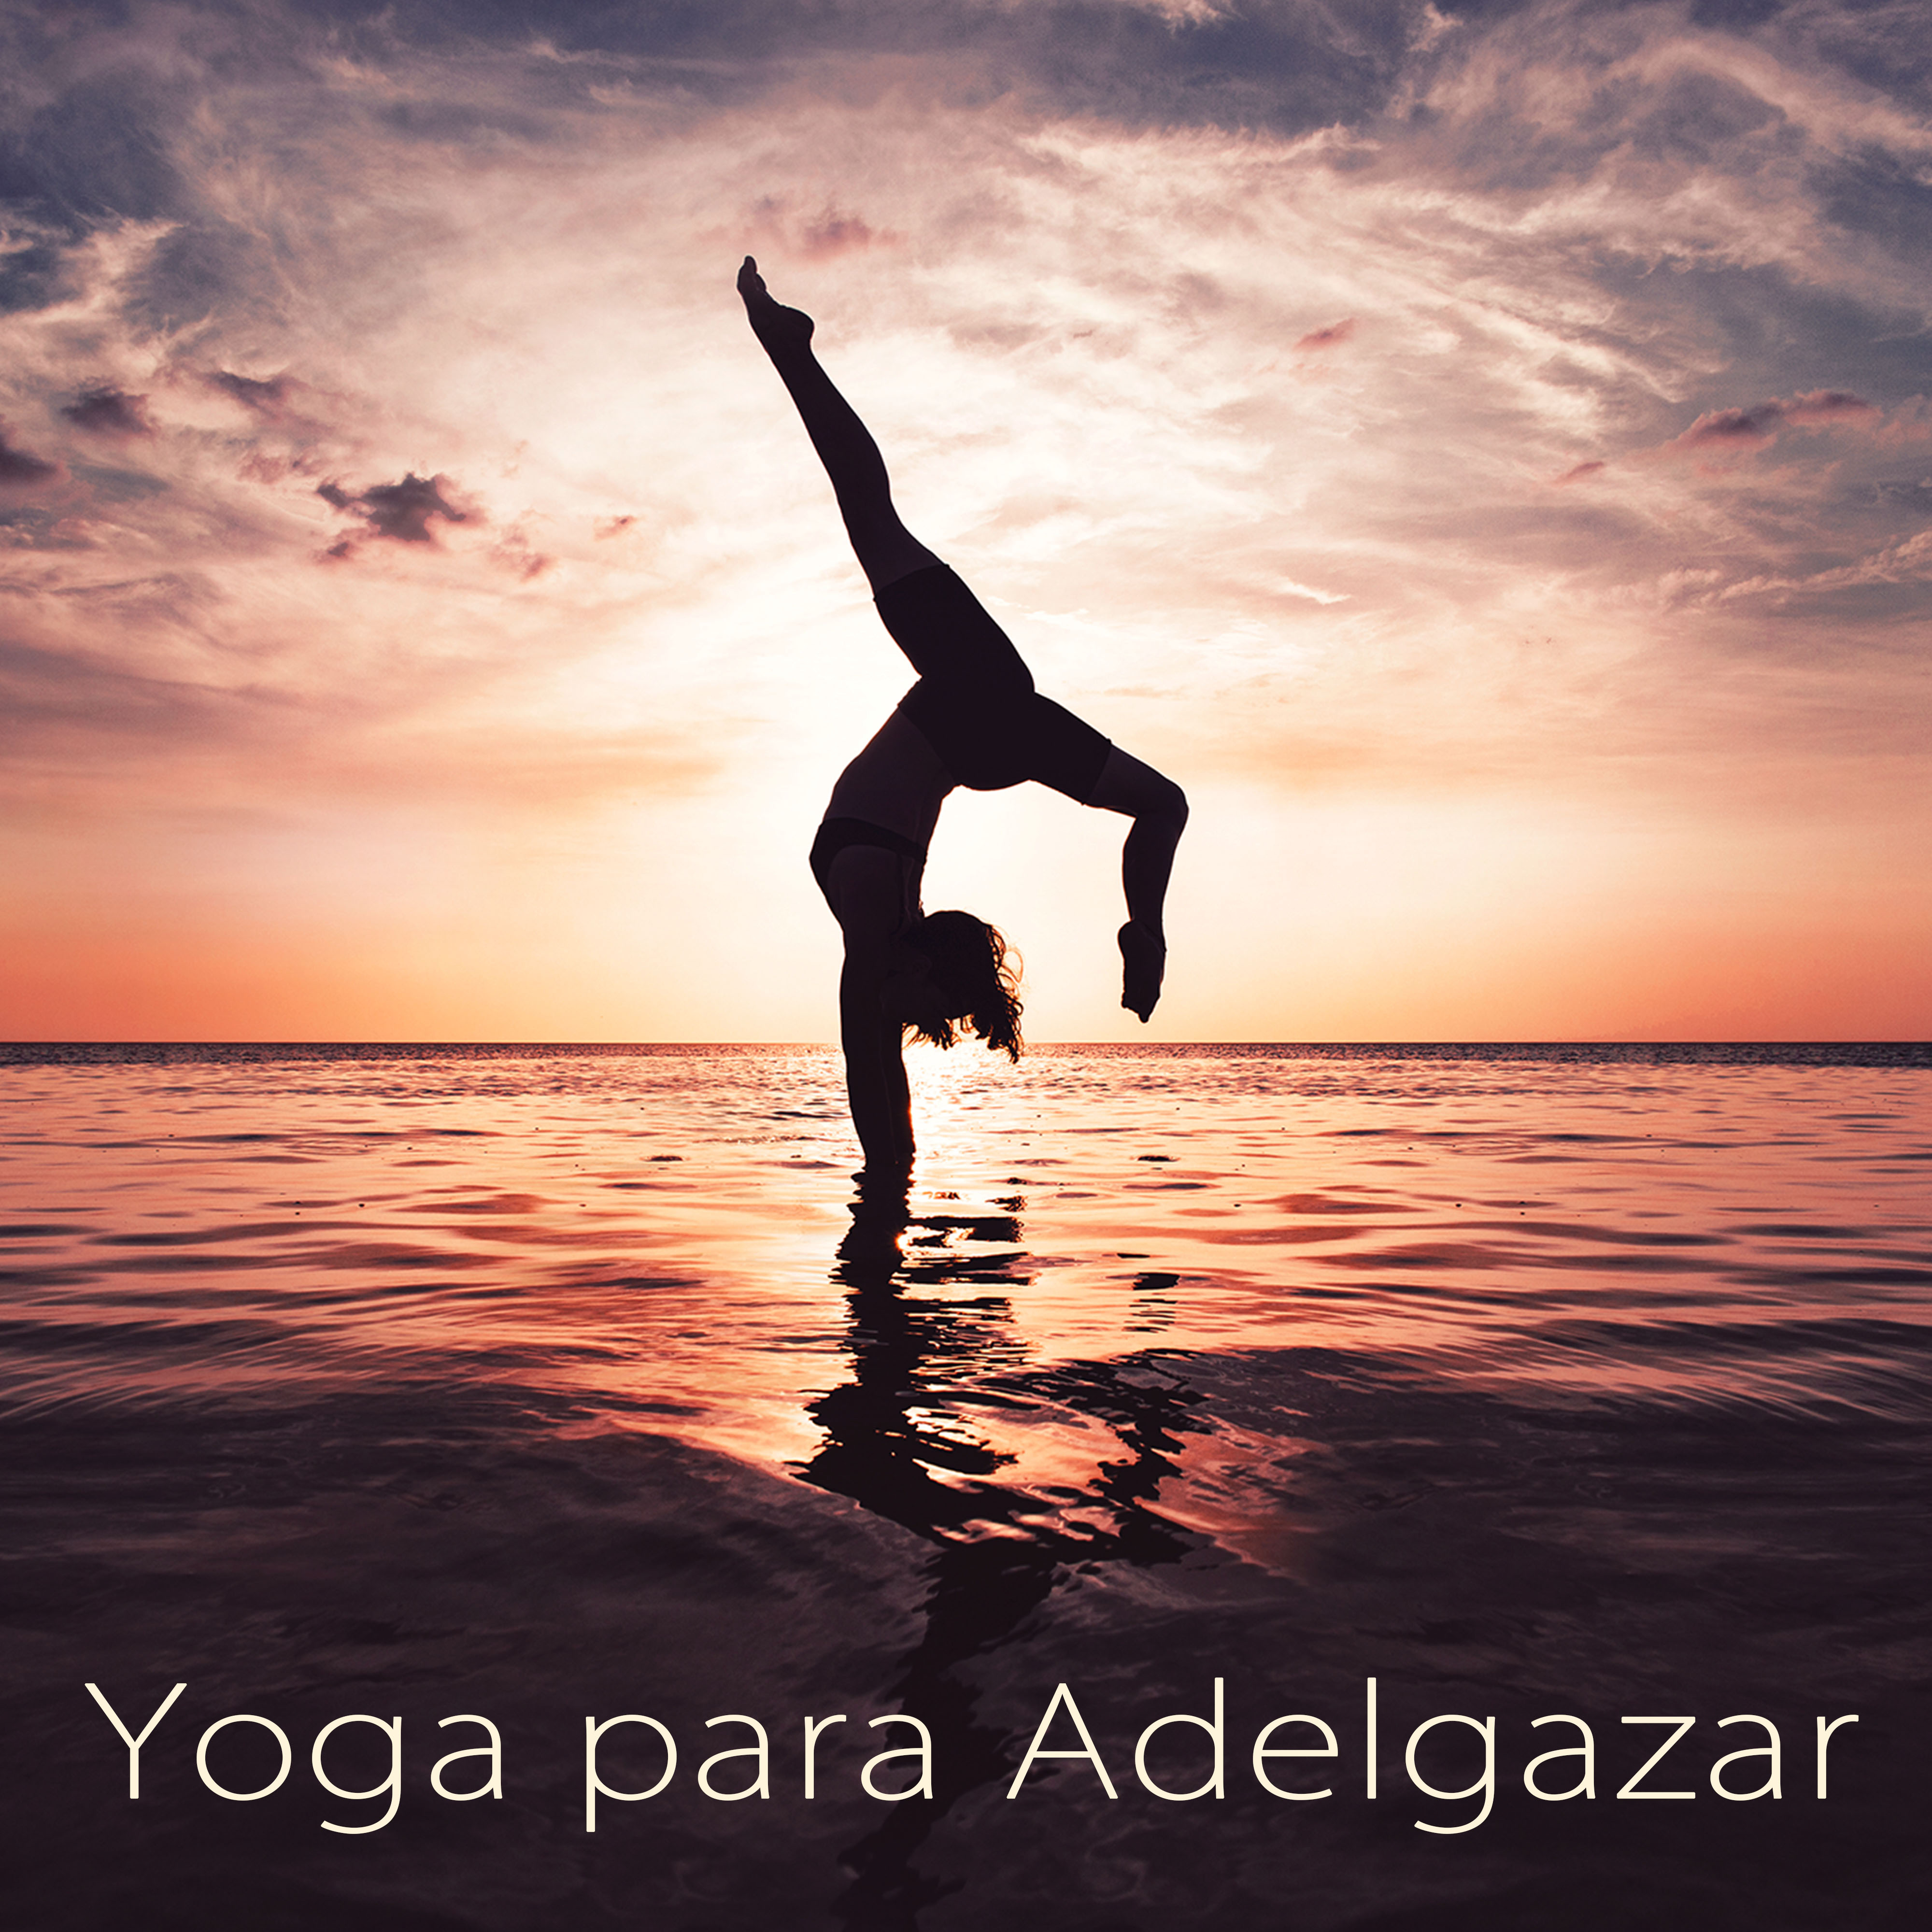 Yoga para Adelgazar – Lounge y Musica Zen para Clases de Yoga, Ashtanga, Power Yoga y Pilates